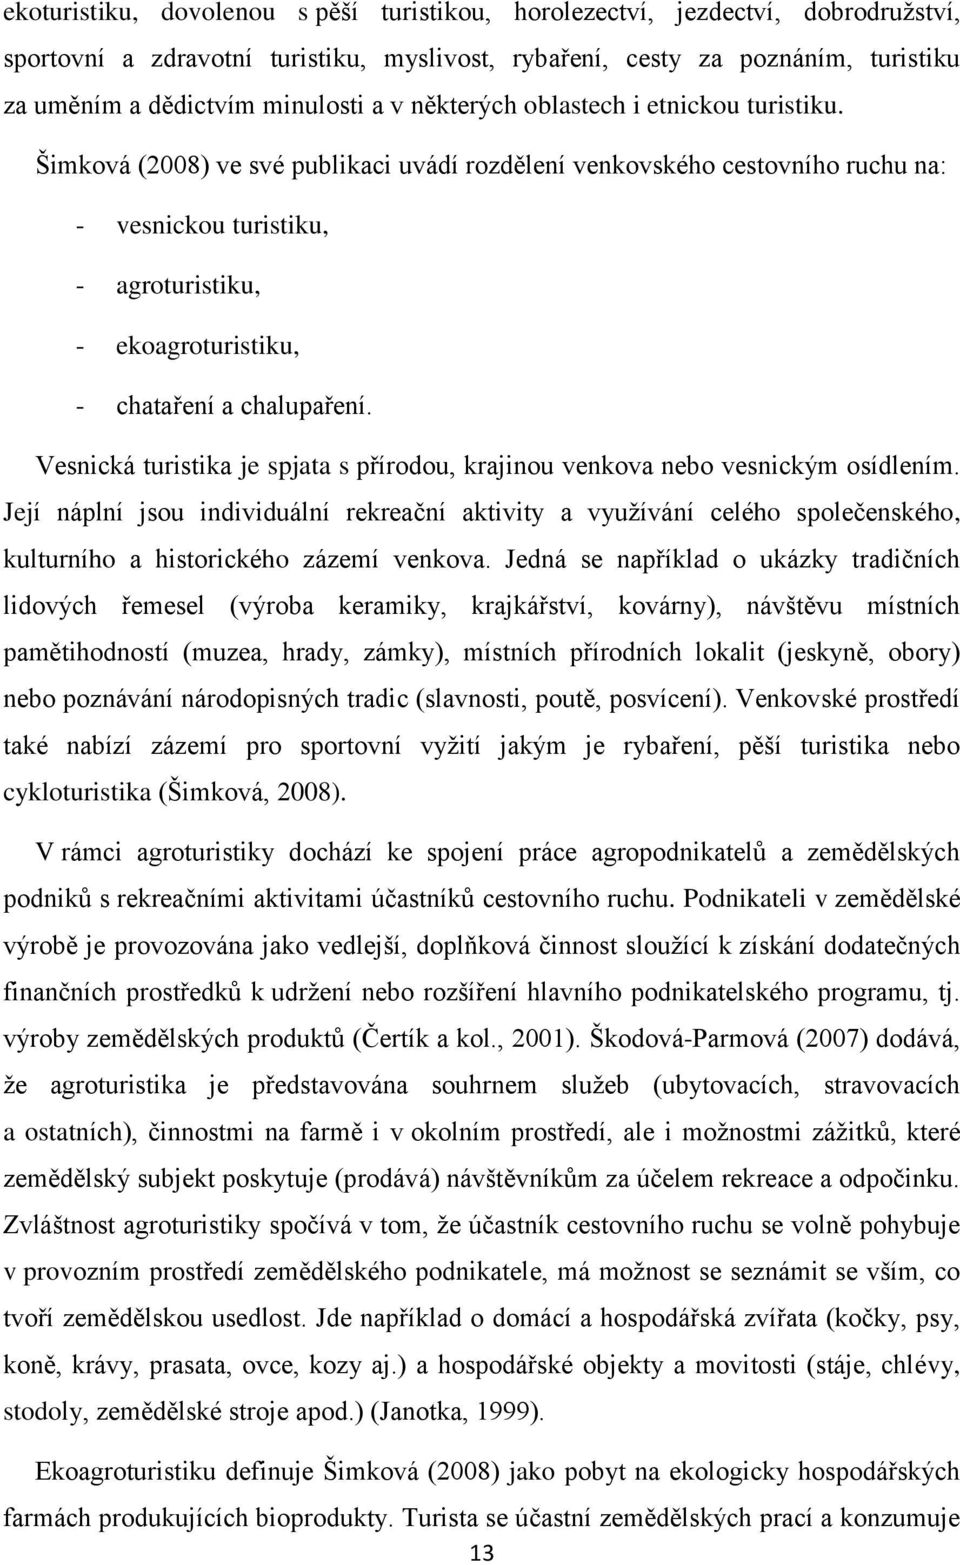 Šimková (2008) ve své publikaci uvádí rozdělení venkovského cestovního ruchu na: - vesnickou turistiku, - agroturistiku, - ekoagroturistiku, - chataření a chalupaření.